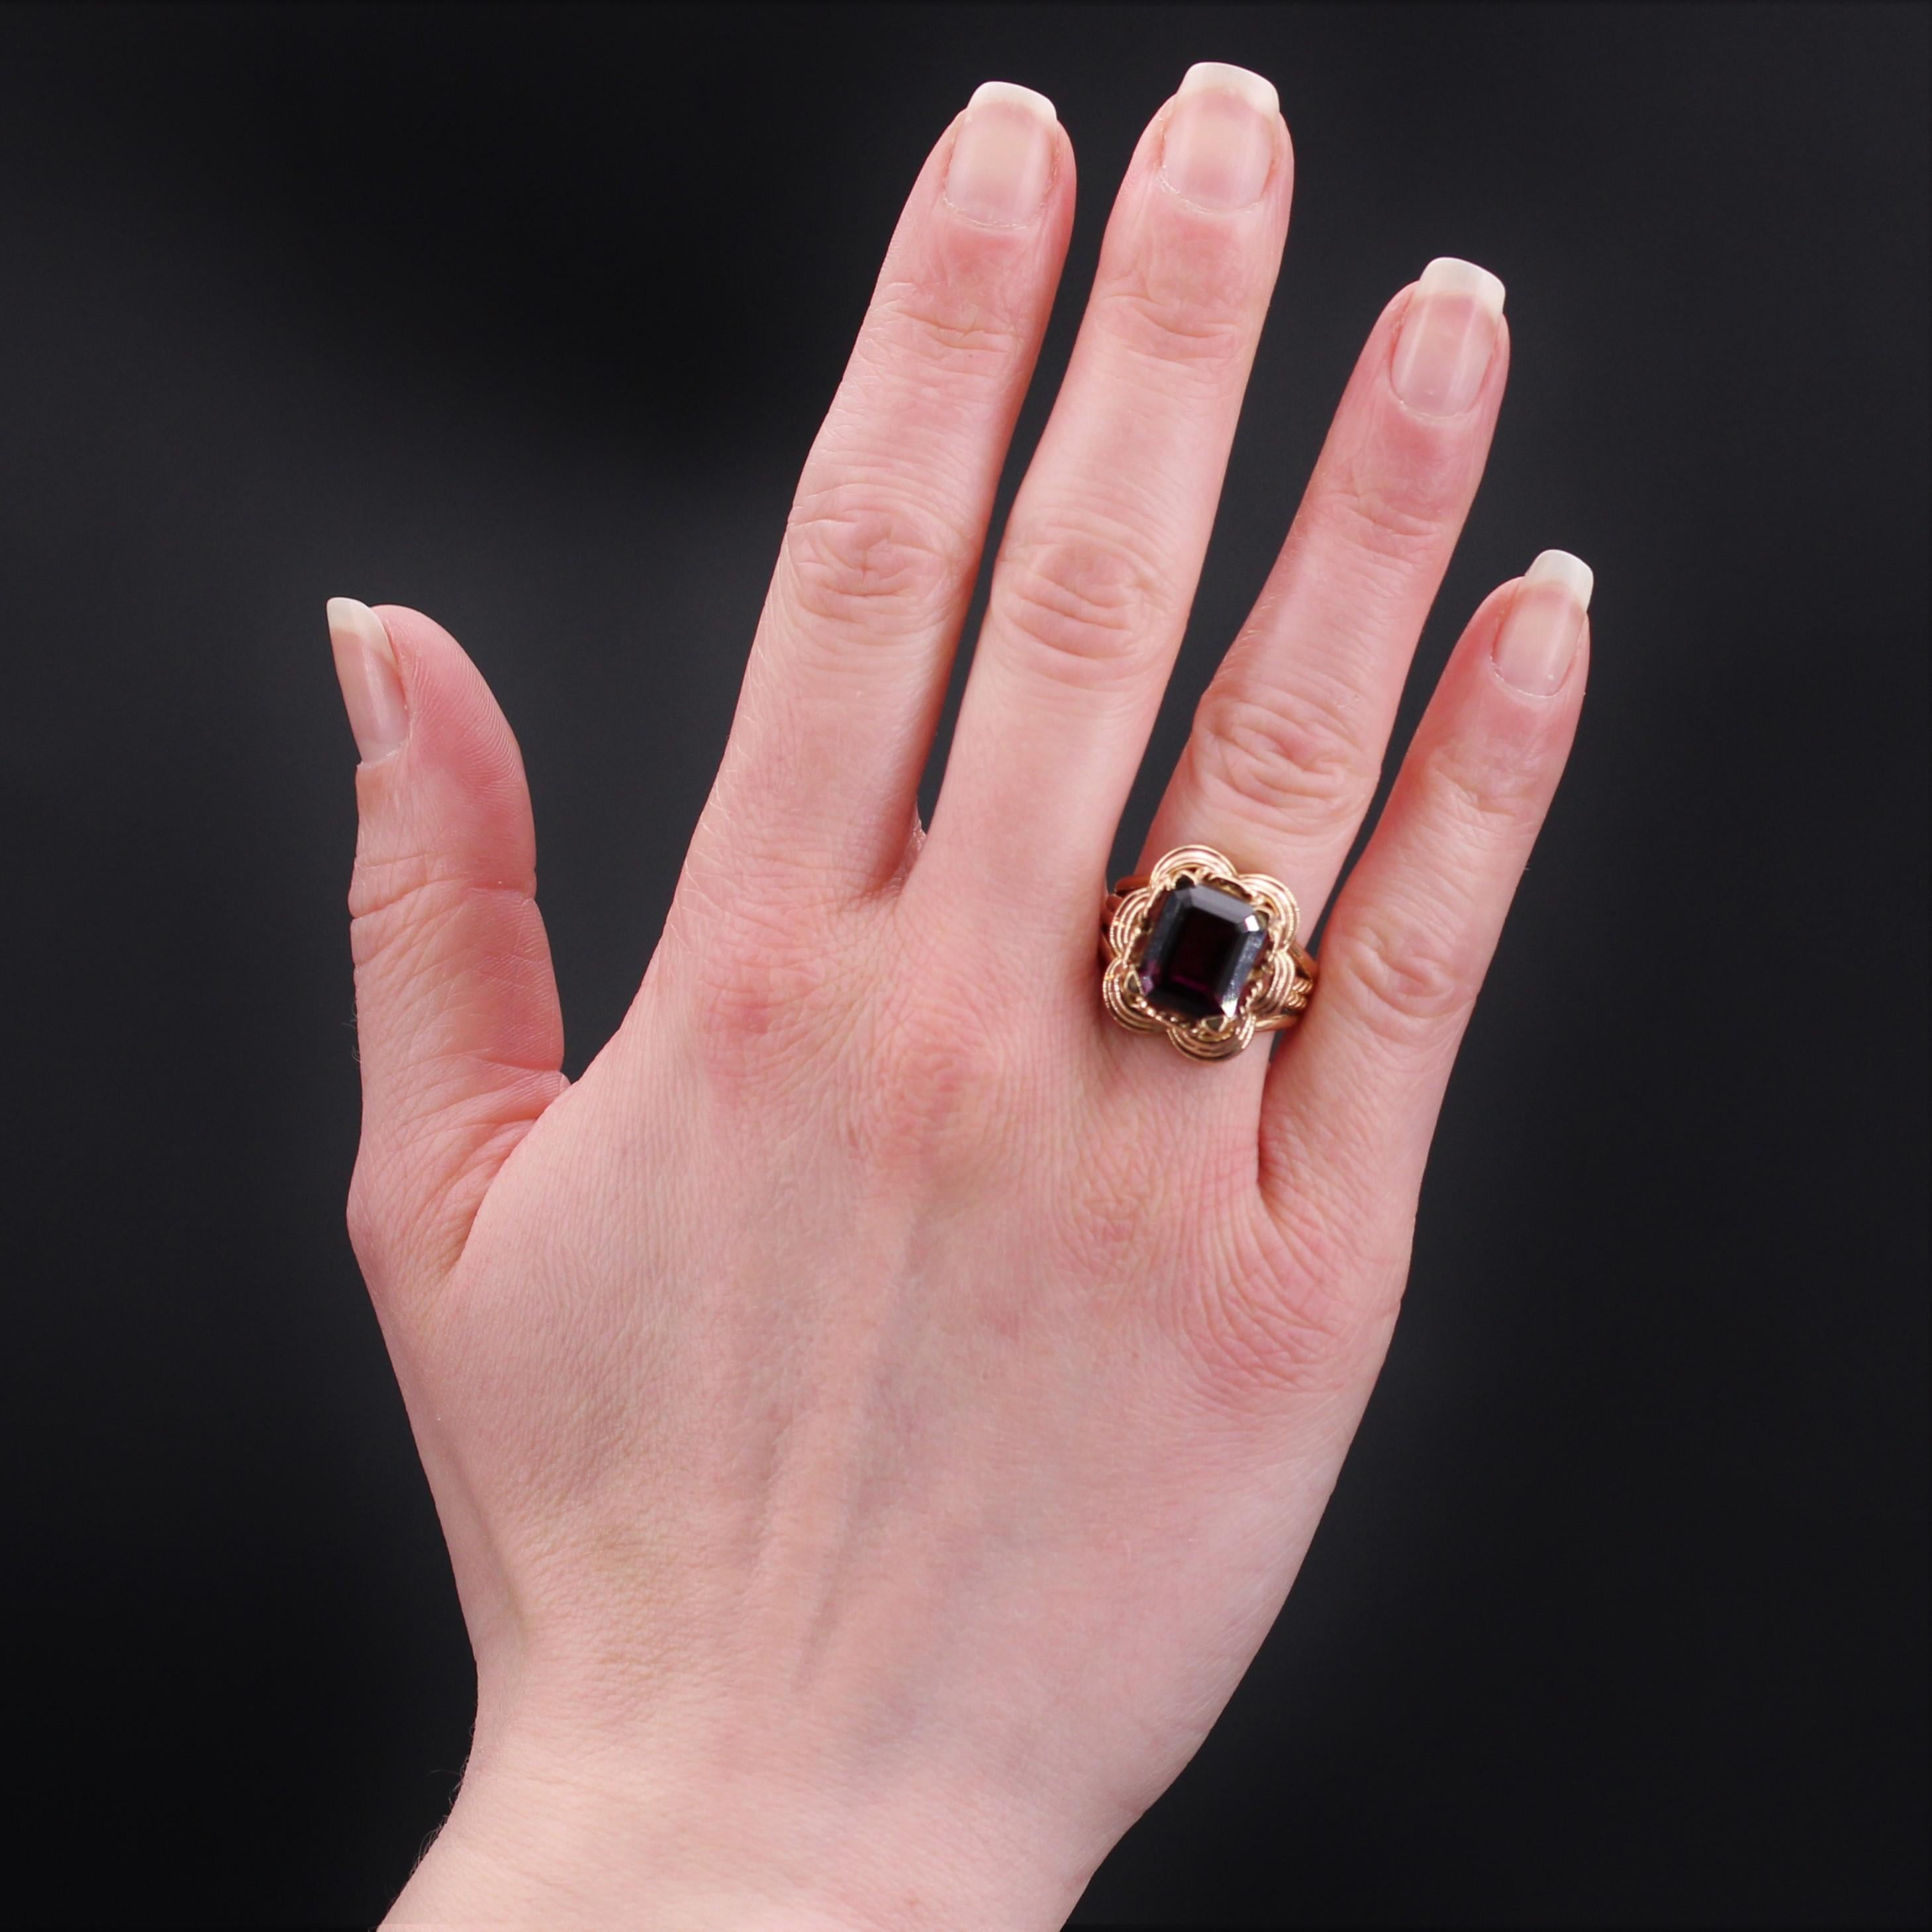 Ring aus 18 Karat Roségold, Adlerkopfpunze.
Wichtiger Retro-Roségoldring, sein Ring besteht aus 4 Golddrähten, die sich an der Basis treffen, wobei die 2 zentralen Drähte verdreht sind. Sie tragen einen Korb, der mit einem Korbgeflecht verziert ist